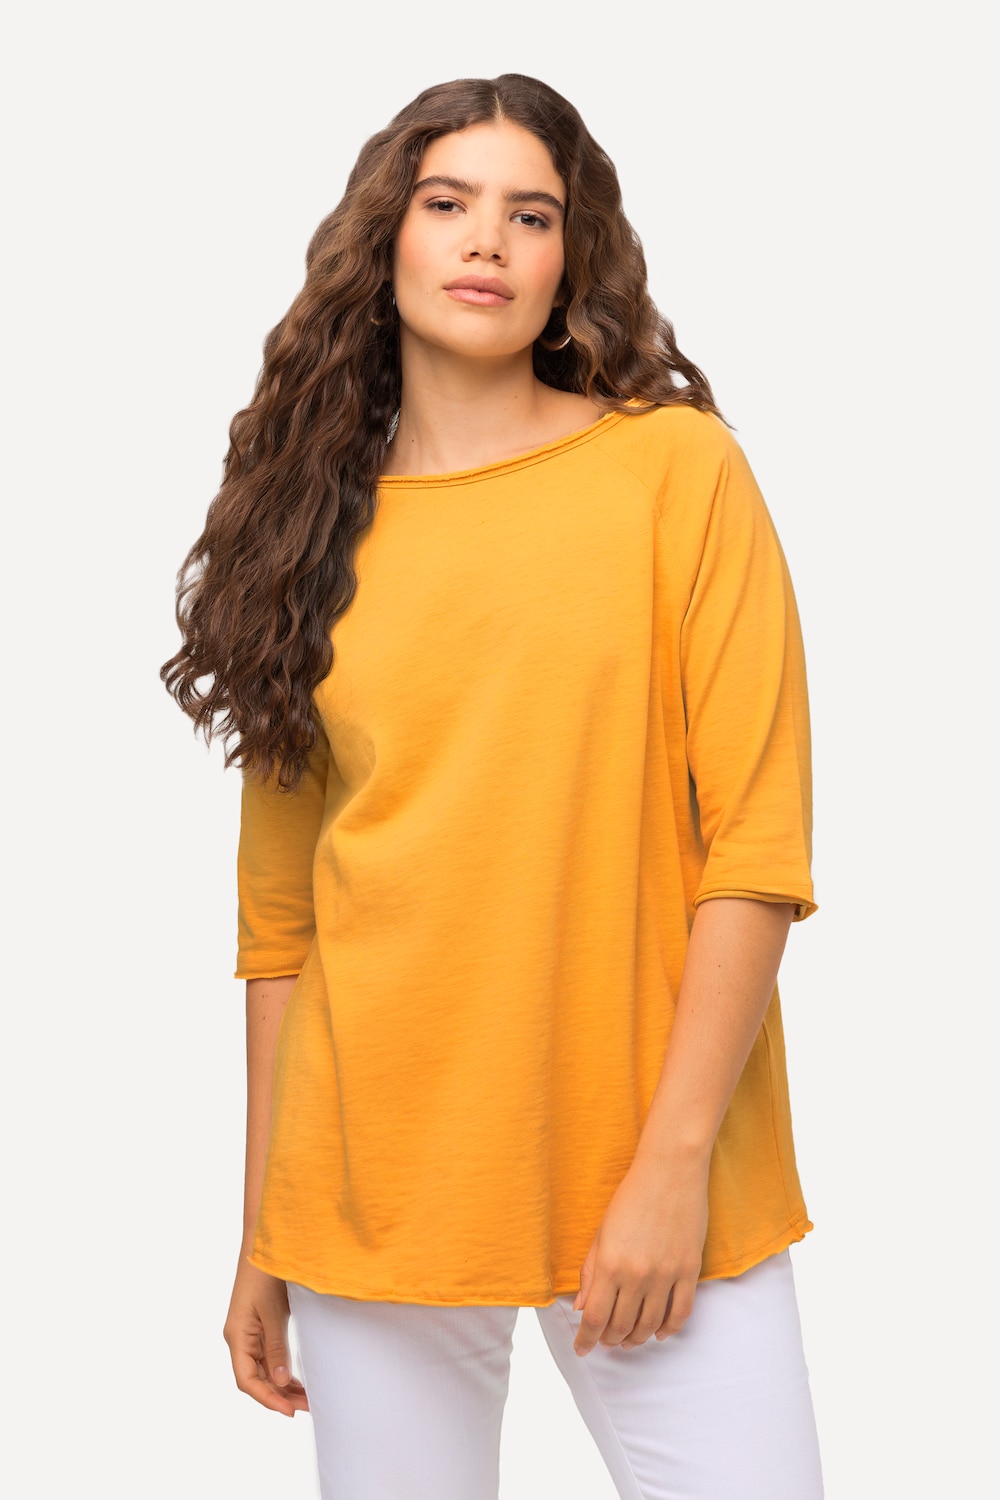 Grote Maten shirt, Dames, oranje, Maat: 42/44, Katoen, Ulla Popken